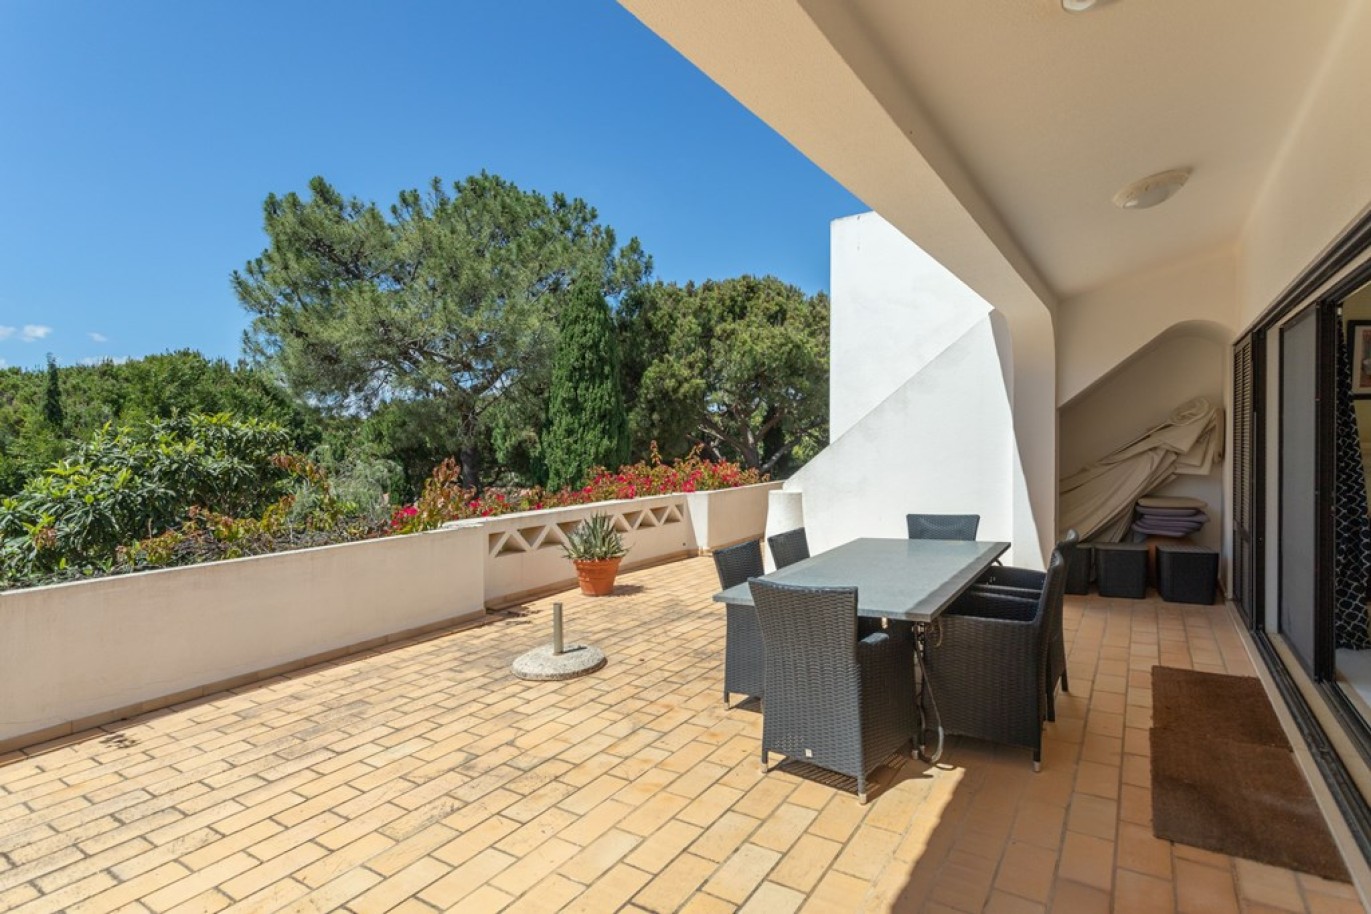 Detached house for sale in Vale do Lobo, Algarve_264558